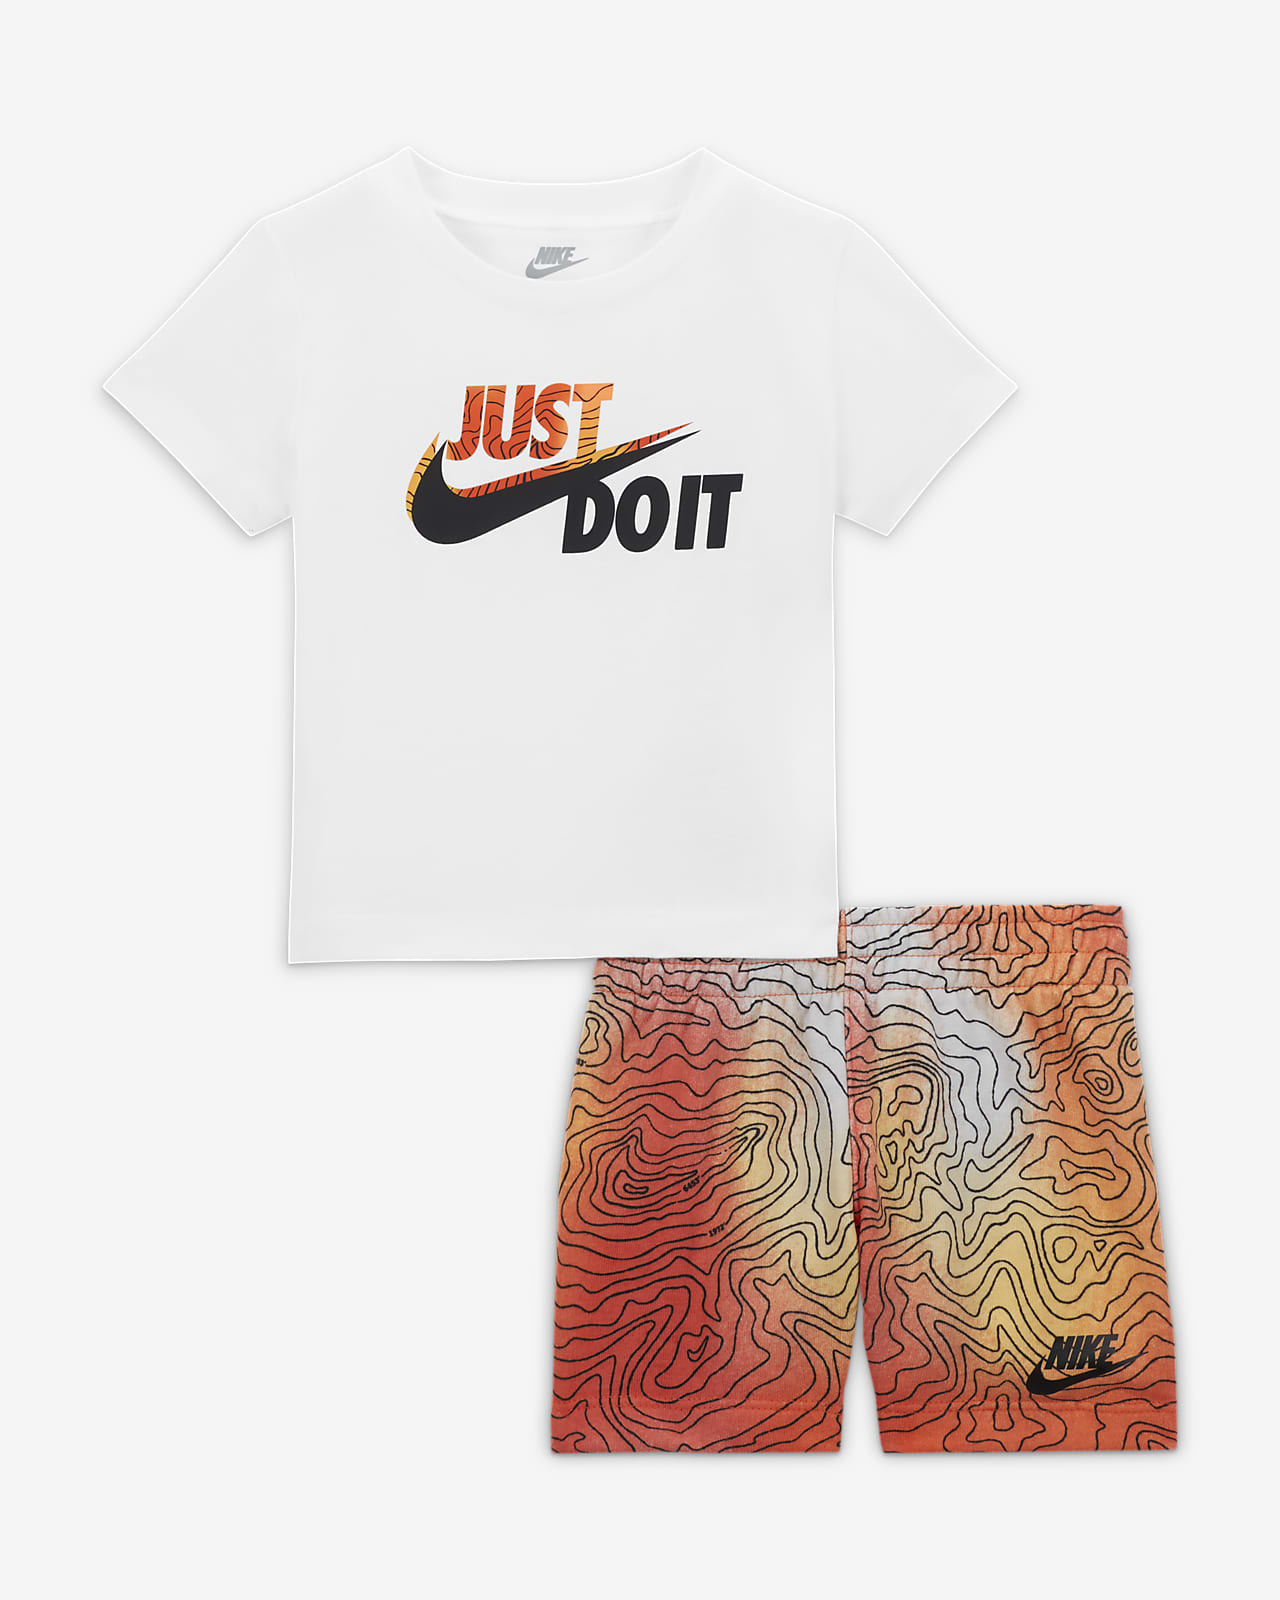 Nike Conjunto de camiseta y pantalón corto Bebé (12-24M). ES